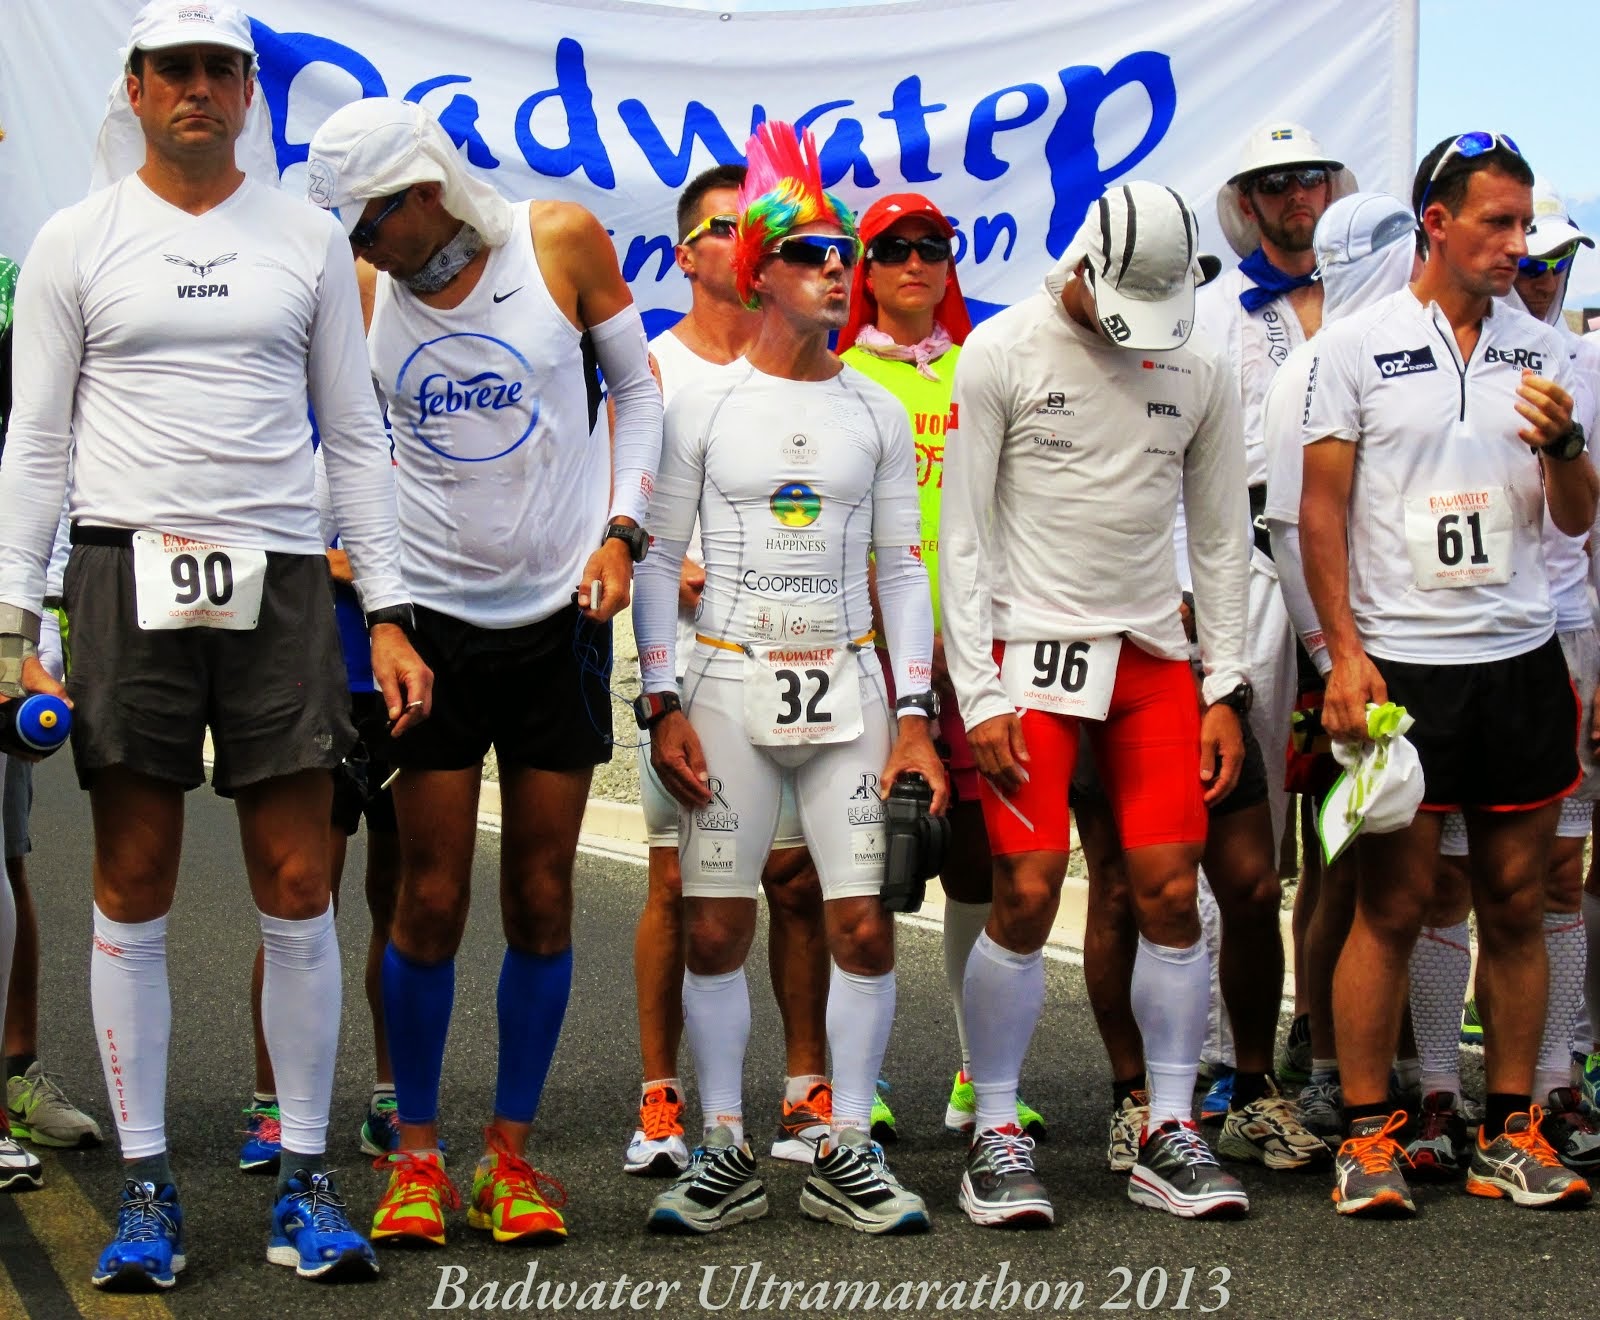 Badwater Ultramarathon 2013